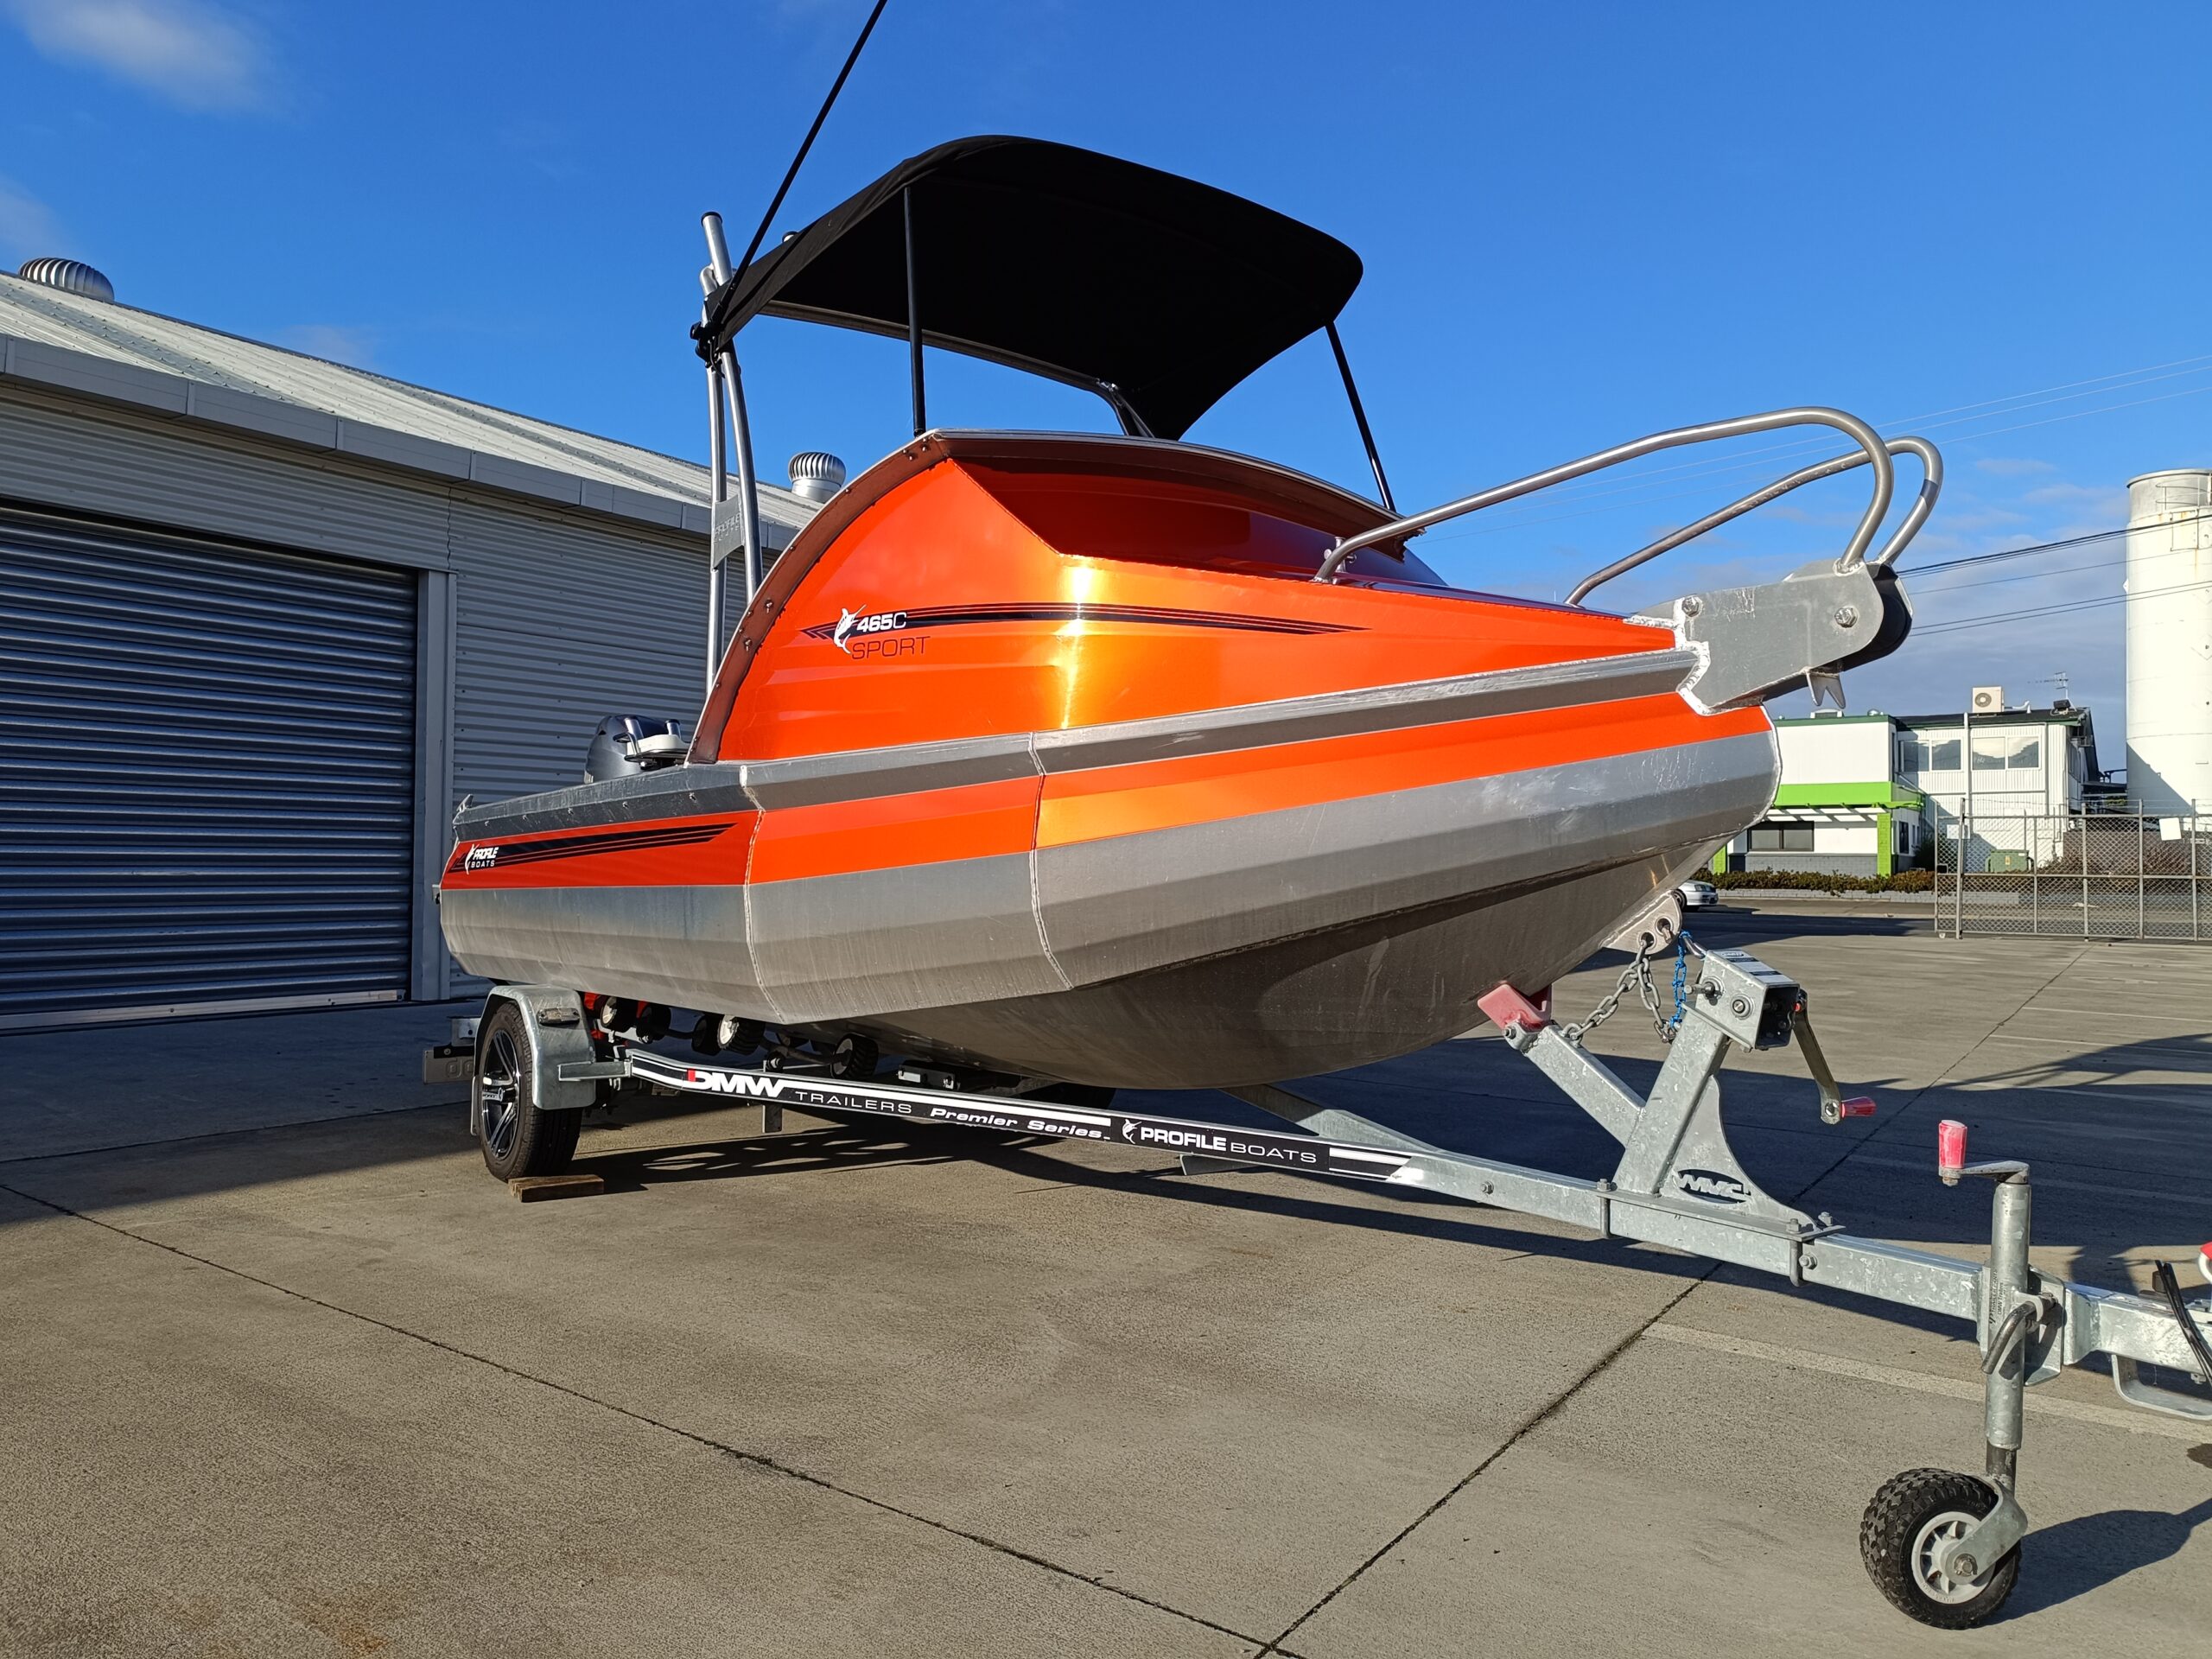 Profile Boats 465C Sport (2020) F60HT